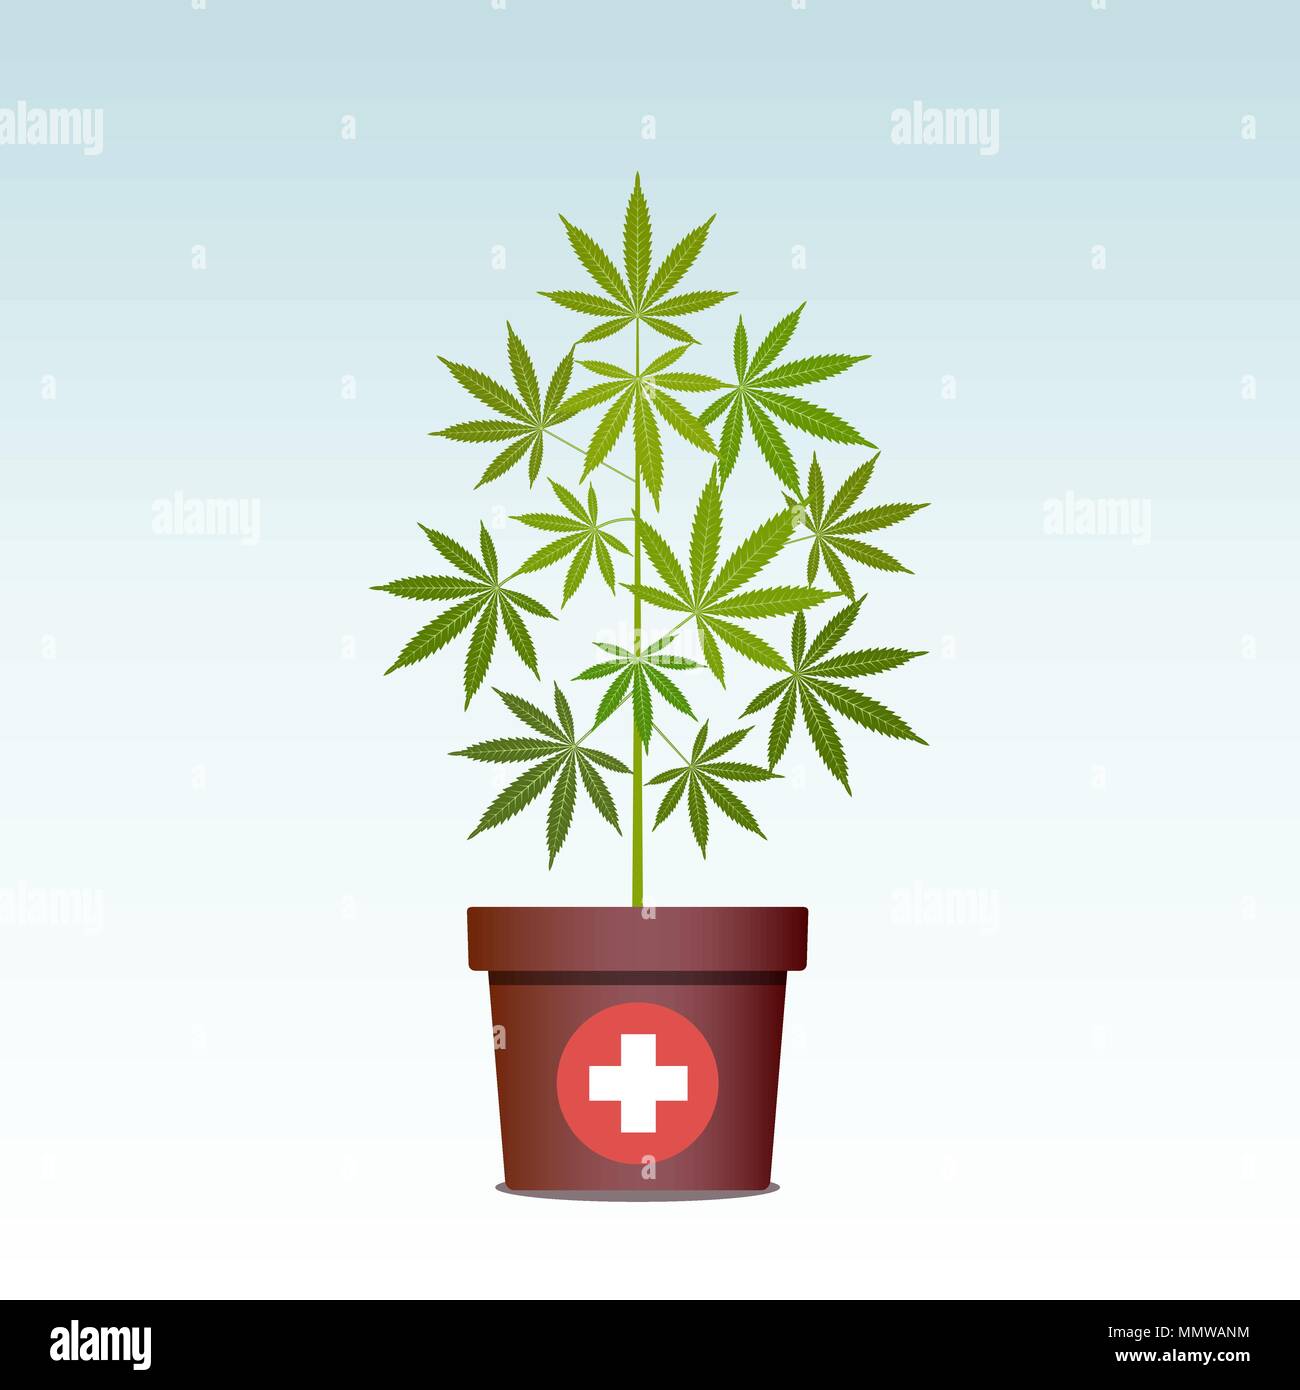 Medizinisches Marihuana oder Cannabis im Topf. Grüne Kräuter in einen Topf. Den Anbau von Cannabis. Drogenkonsum, Marihuana verwenden. Isolierte Vector Illustration. Stock Vektor